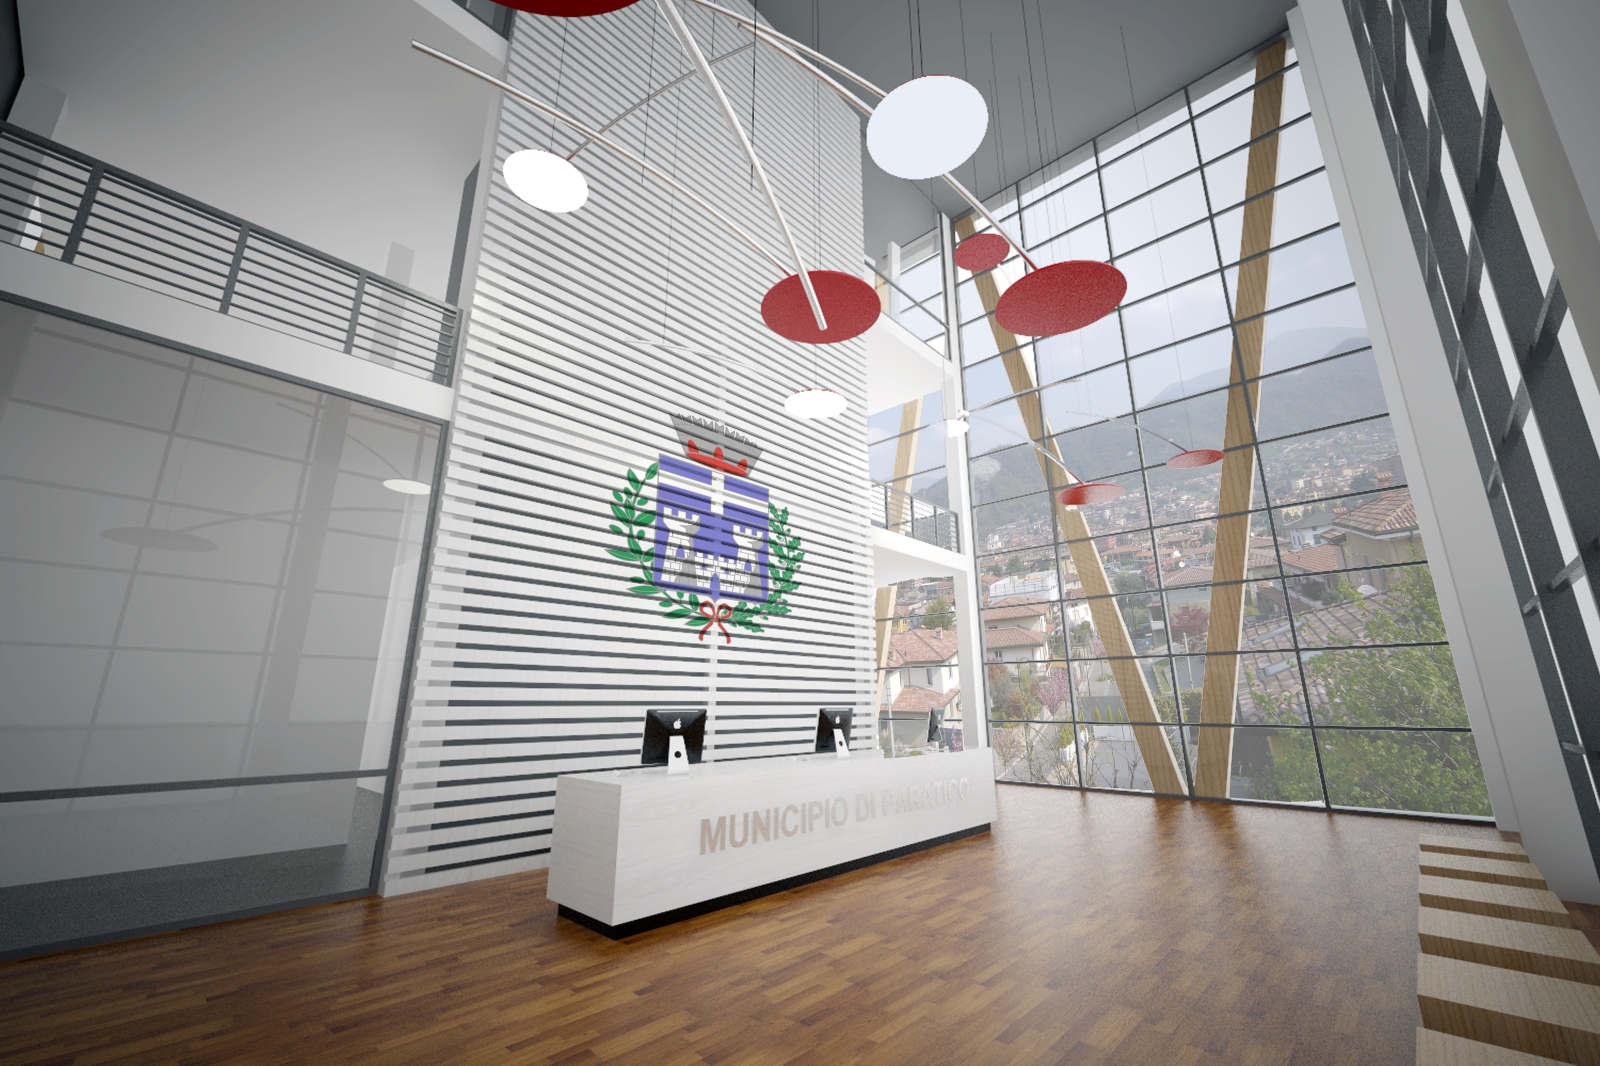 Concorso d'idee per la progettazione della nuova sede del Municipio di Paratico e spazi attigui (BS) - Progetto partecipante